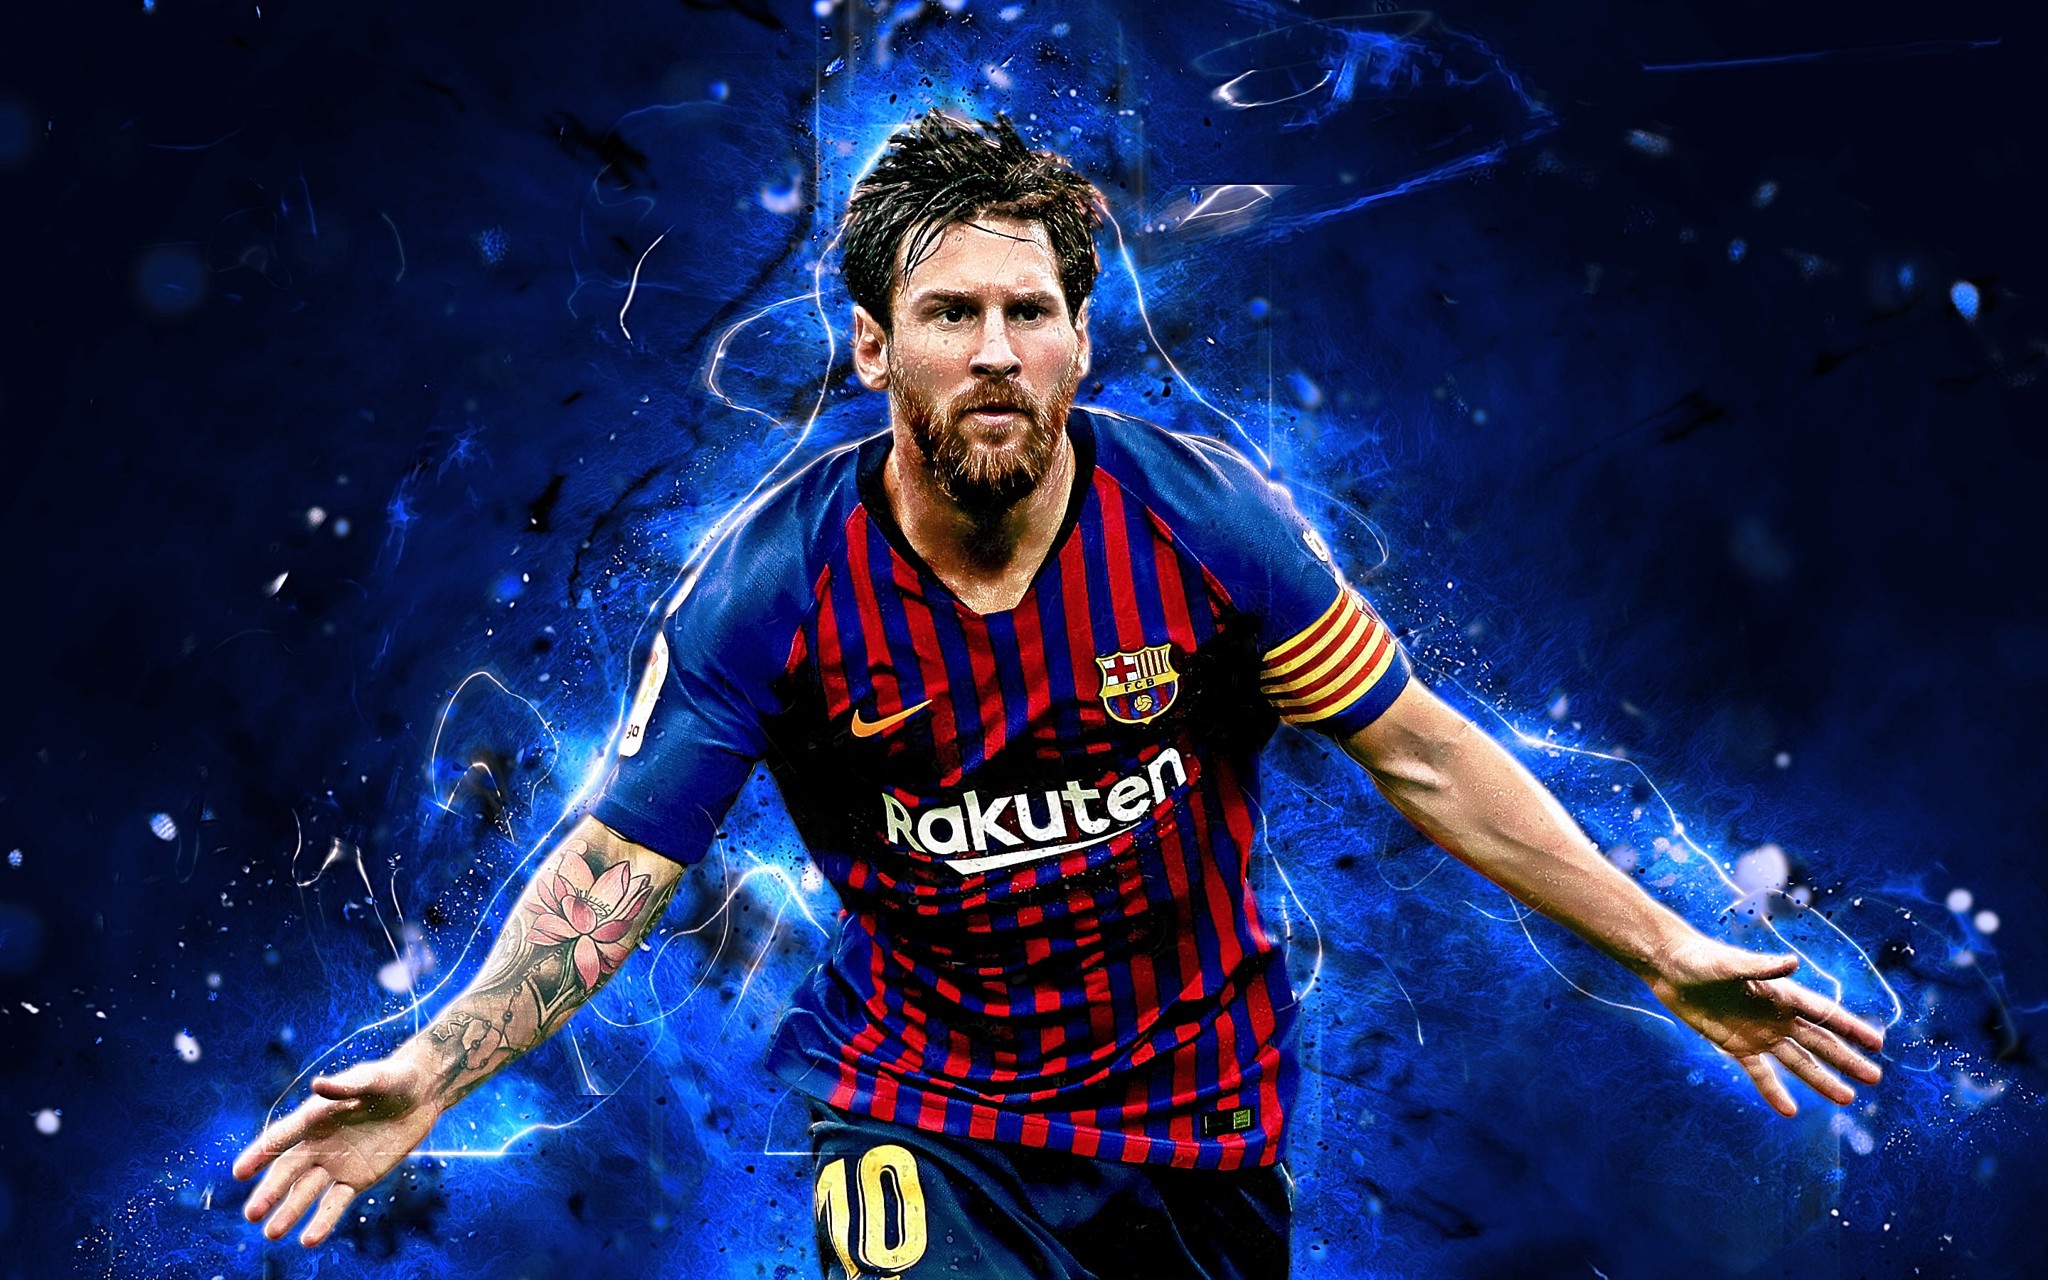 Hình nền Messi sẽ làm cho màn hình desktop của bạn trở nên độc đáo và nổi bật hơn bao giờ hết. Với đủ loại ảnh đa dạng, từ các hình ảnh đẹp mắt trên sân cỏ đến những khoảnh khắc hạnh phúc với gia đình, bạn sẽ tìm thấy những bức ảnh yêu thích của mình. Hãy tải xuống hình nền Messi ngay hôm nay và thể hiện tình yêu của bạn với siêu sao bóng đá này.